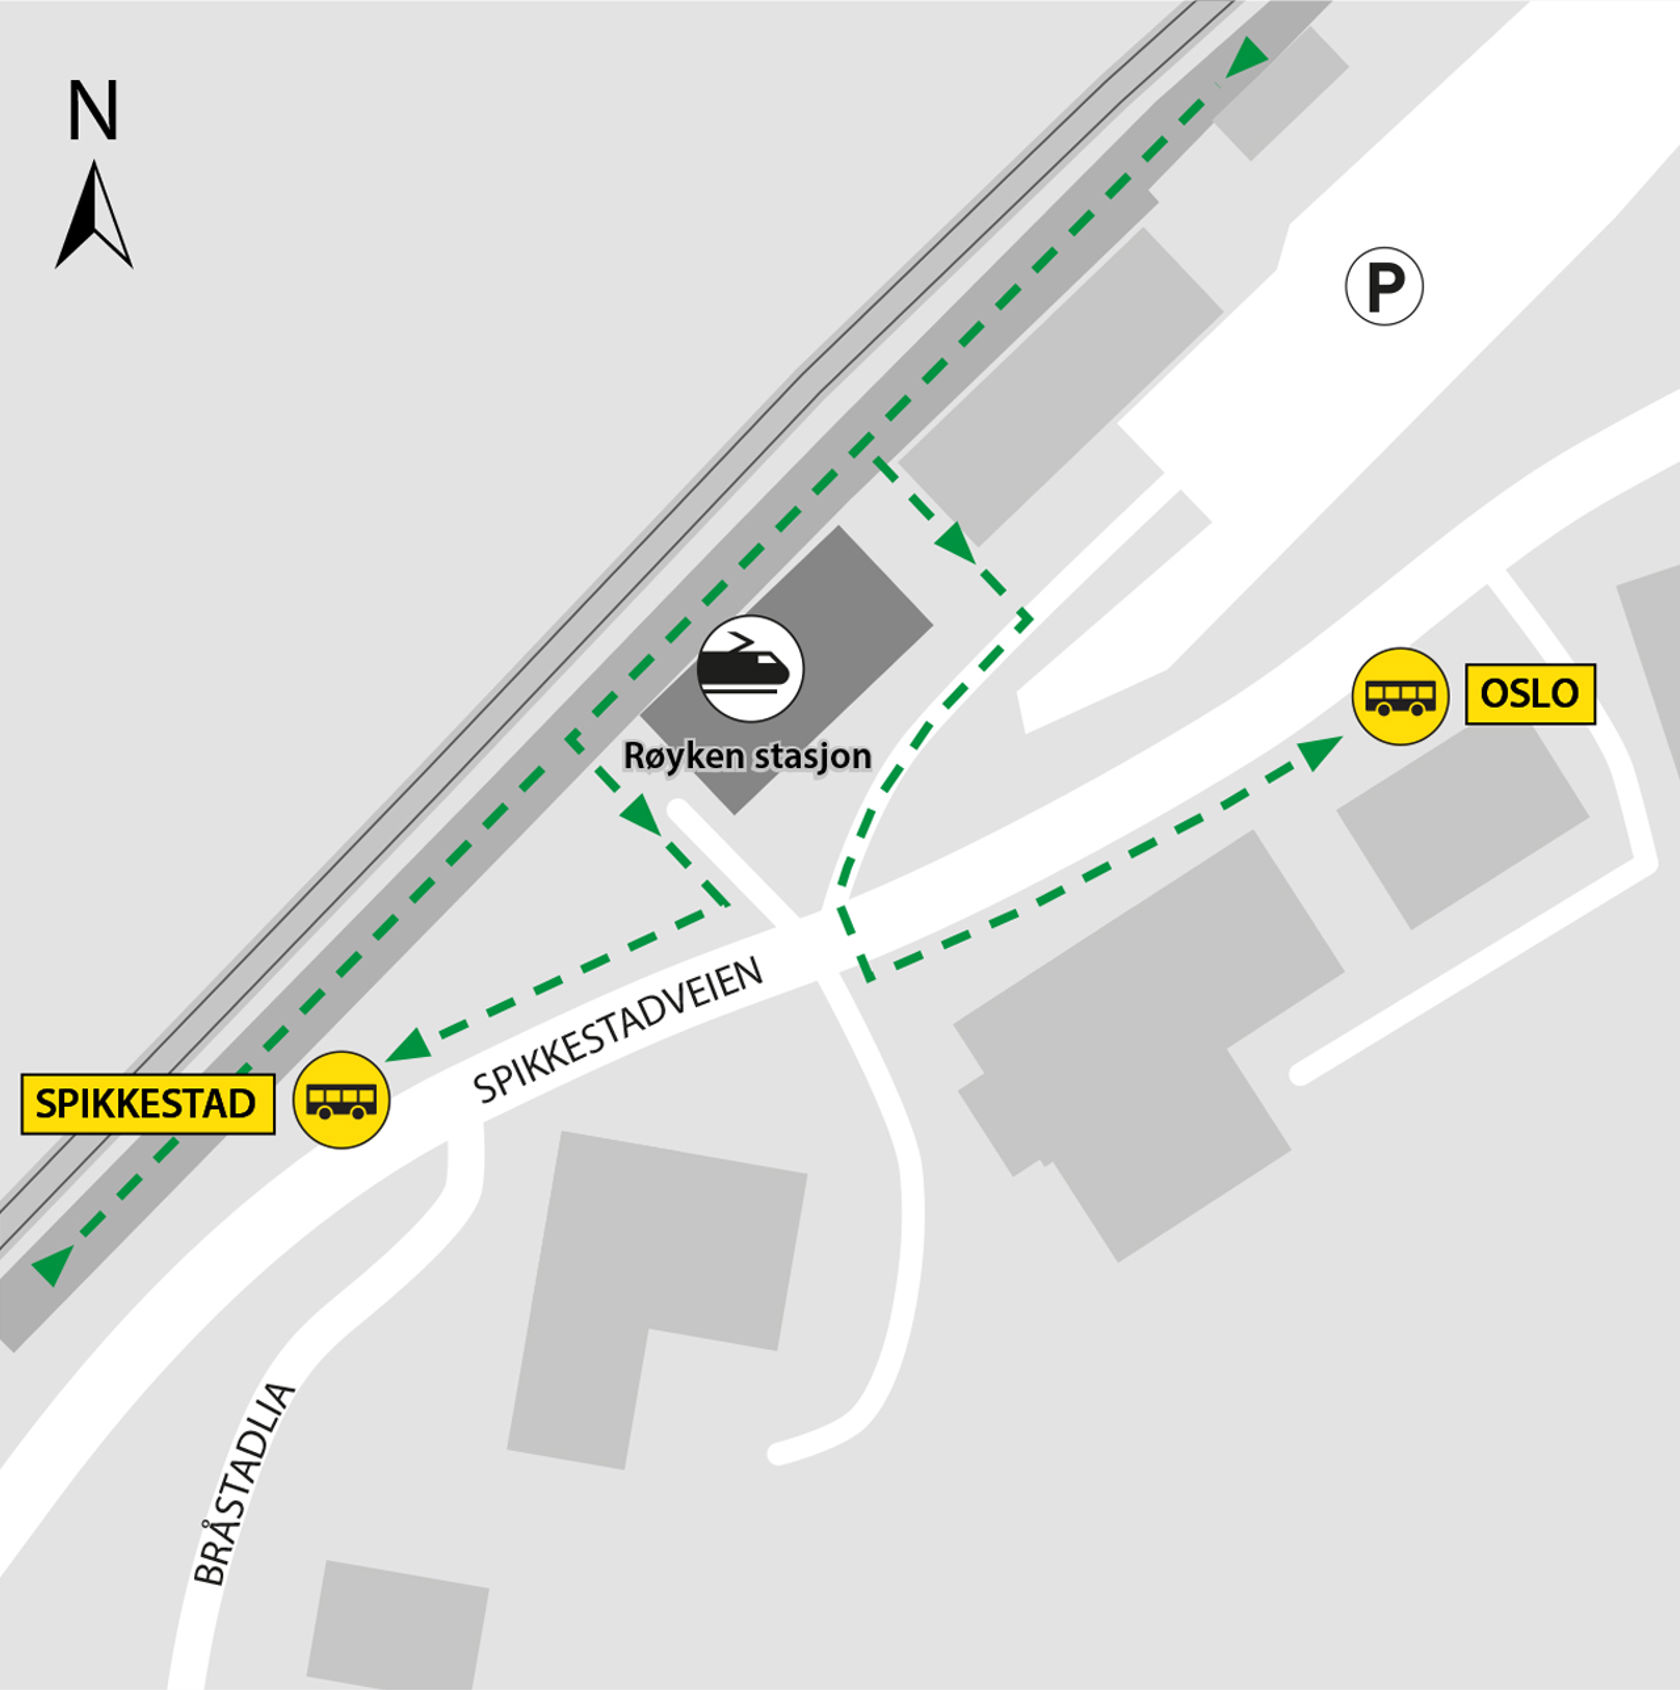 Kartet viser at bussene kjører fra bussholdeplassene Røyken stasjon i Spikkestadveien.